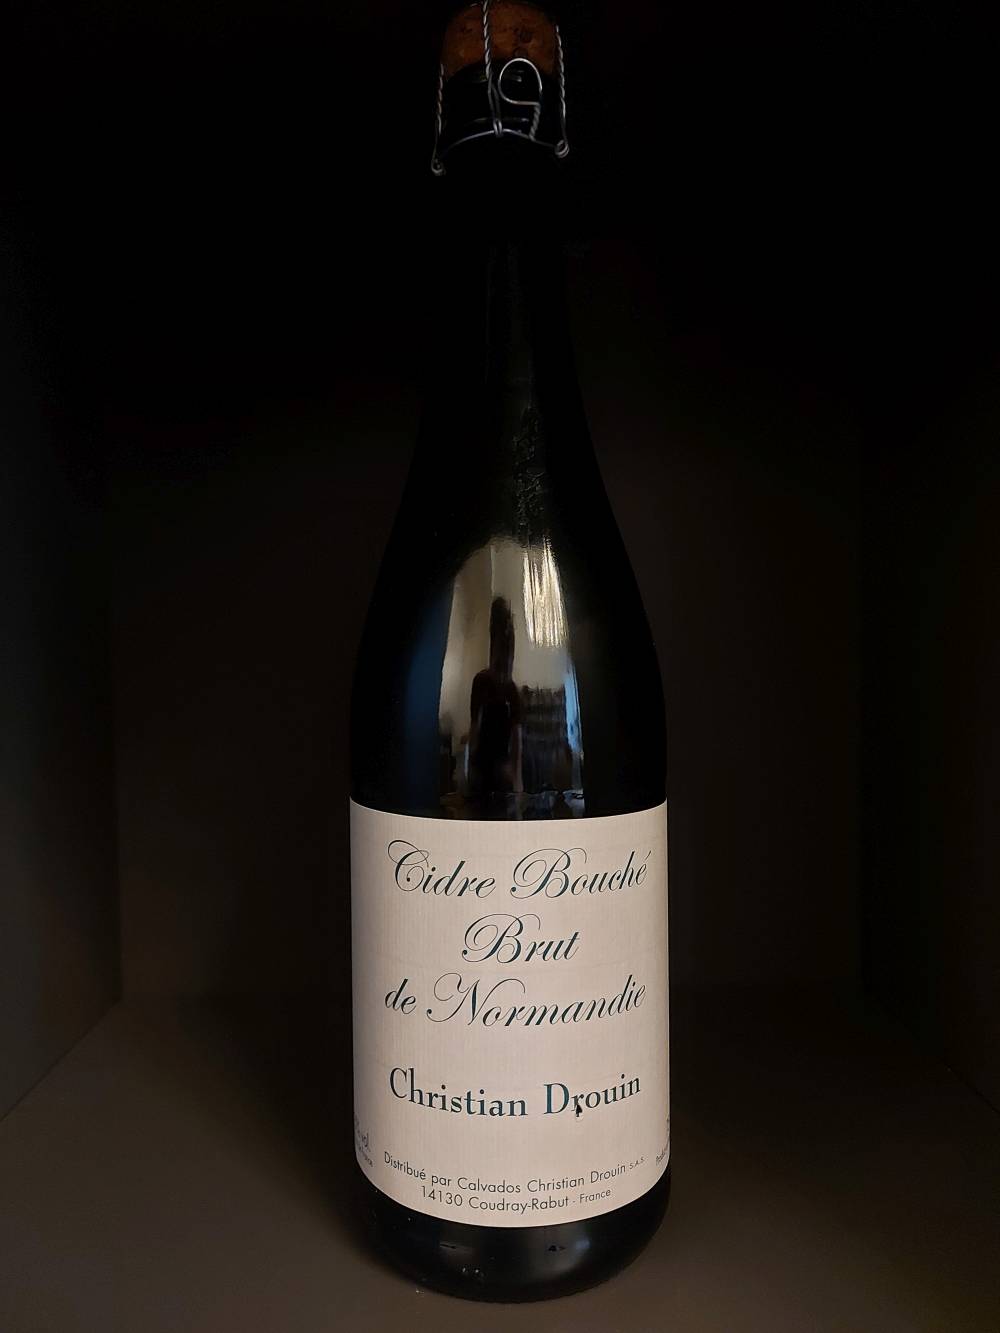 Christian Drouin Cidre Bouche Brut de Normandie